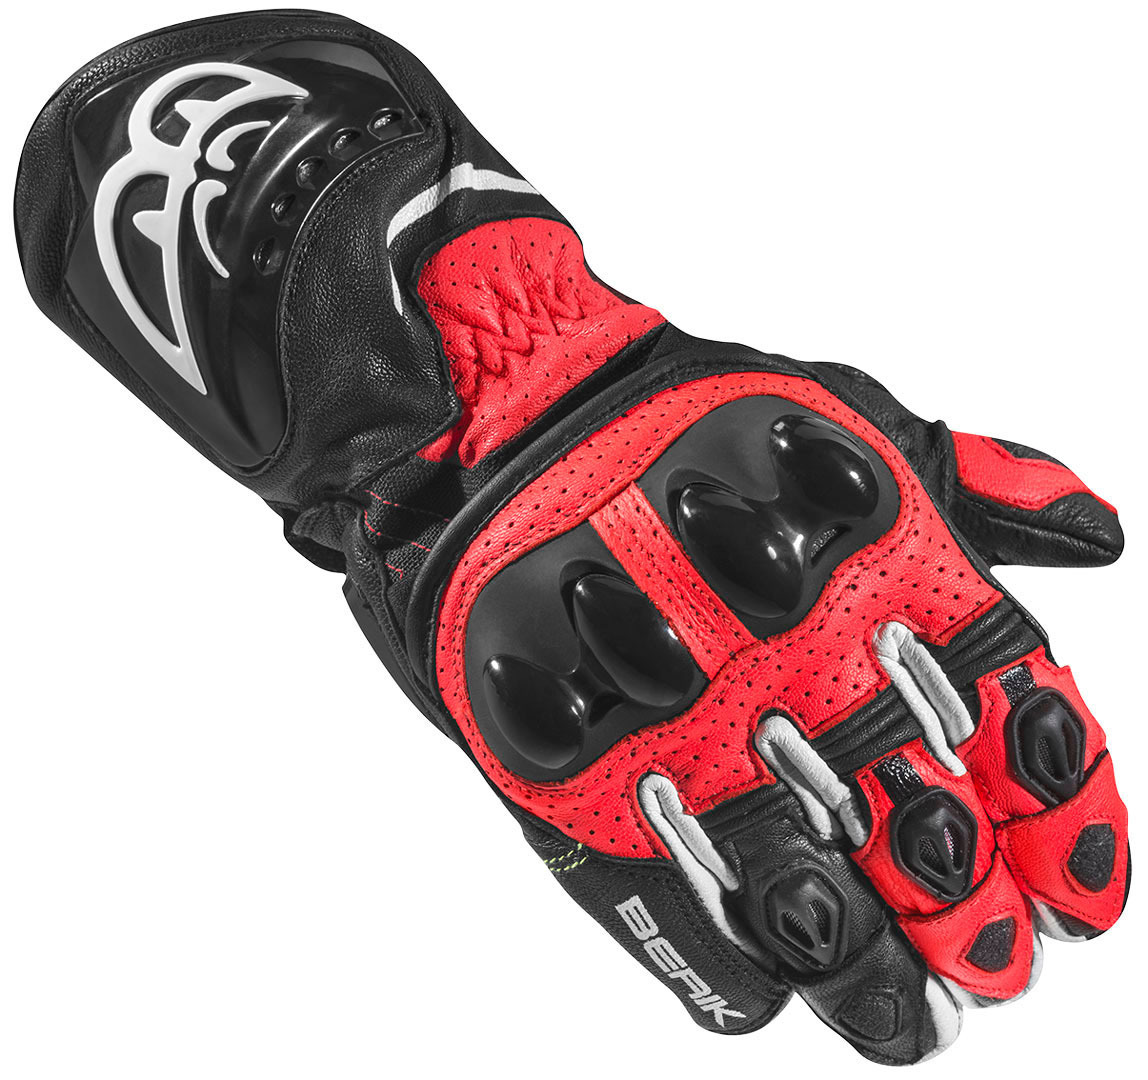 Мотоциклетные перчатки Berik Spa Evo с длинными манжетами, черный/красный мотоциклетные перчатки spa evo berik черный